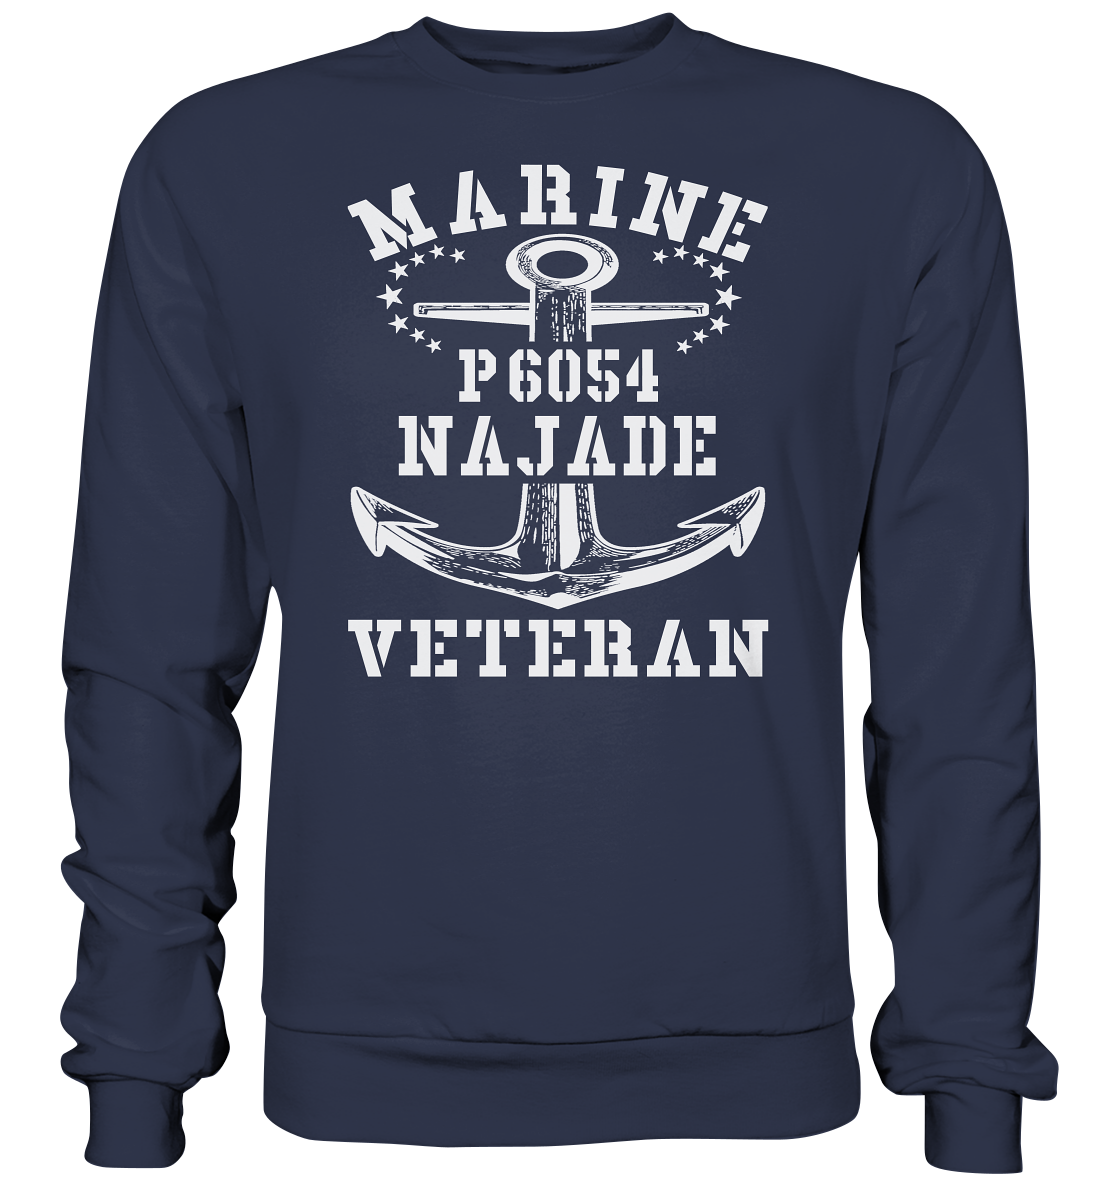 U-Jagdboot P6054 NAJADE Marine Veteran - Premium Sweatshirt